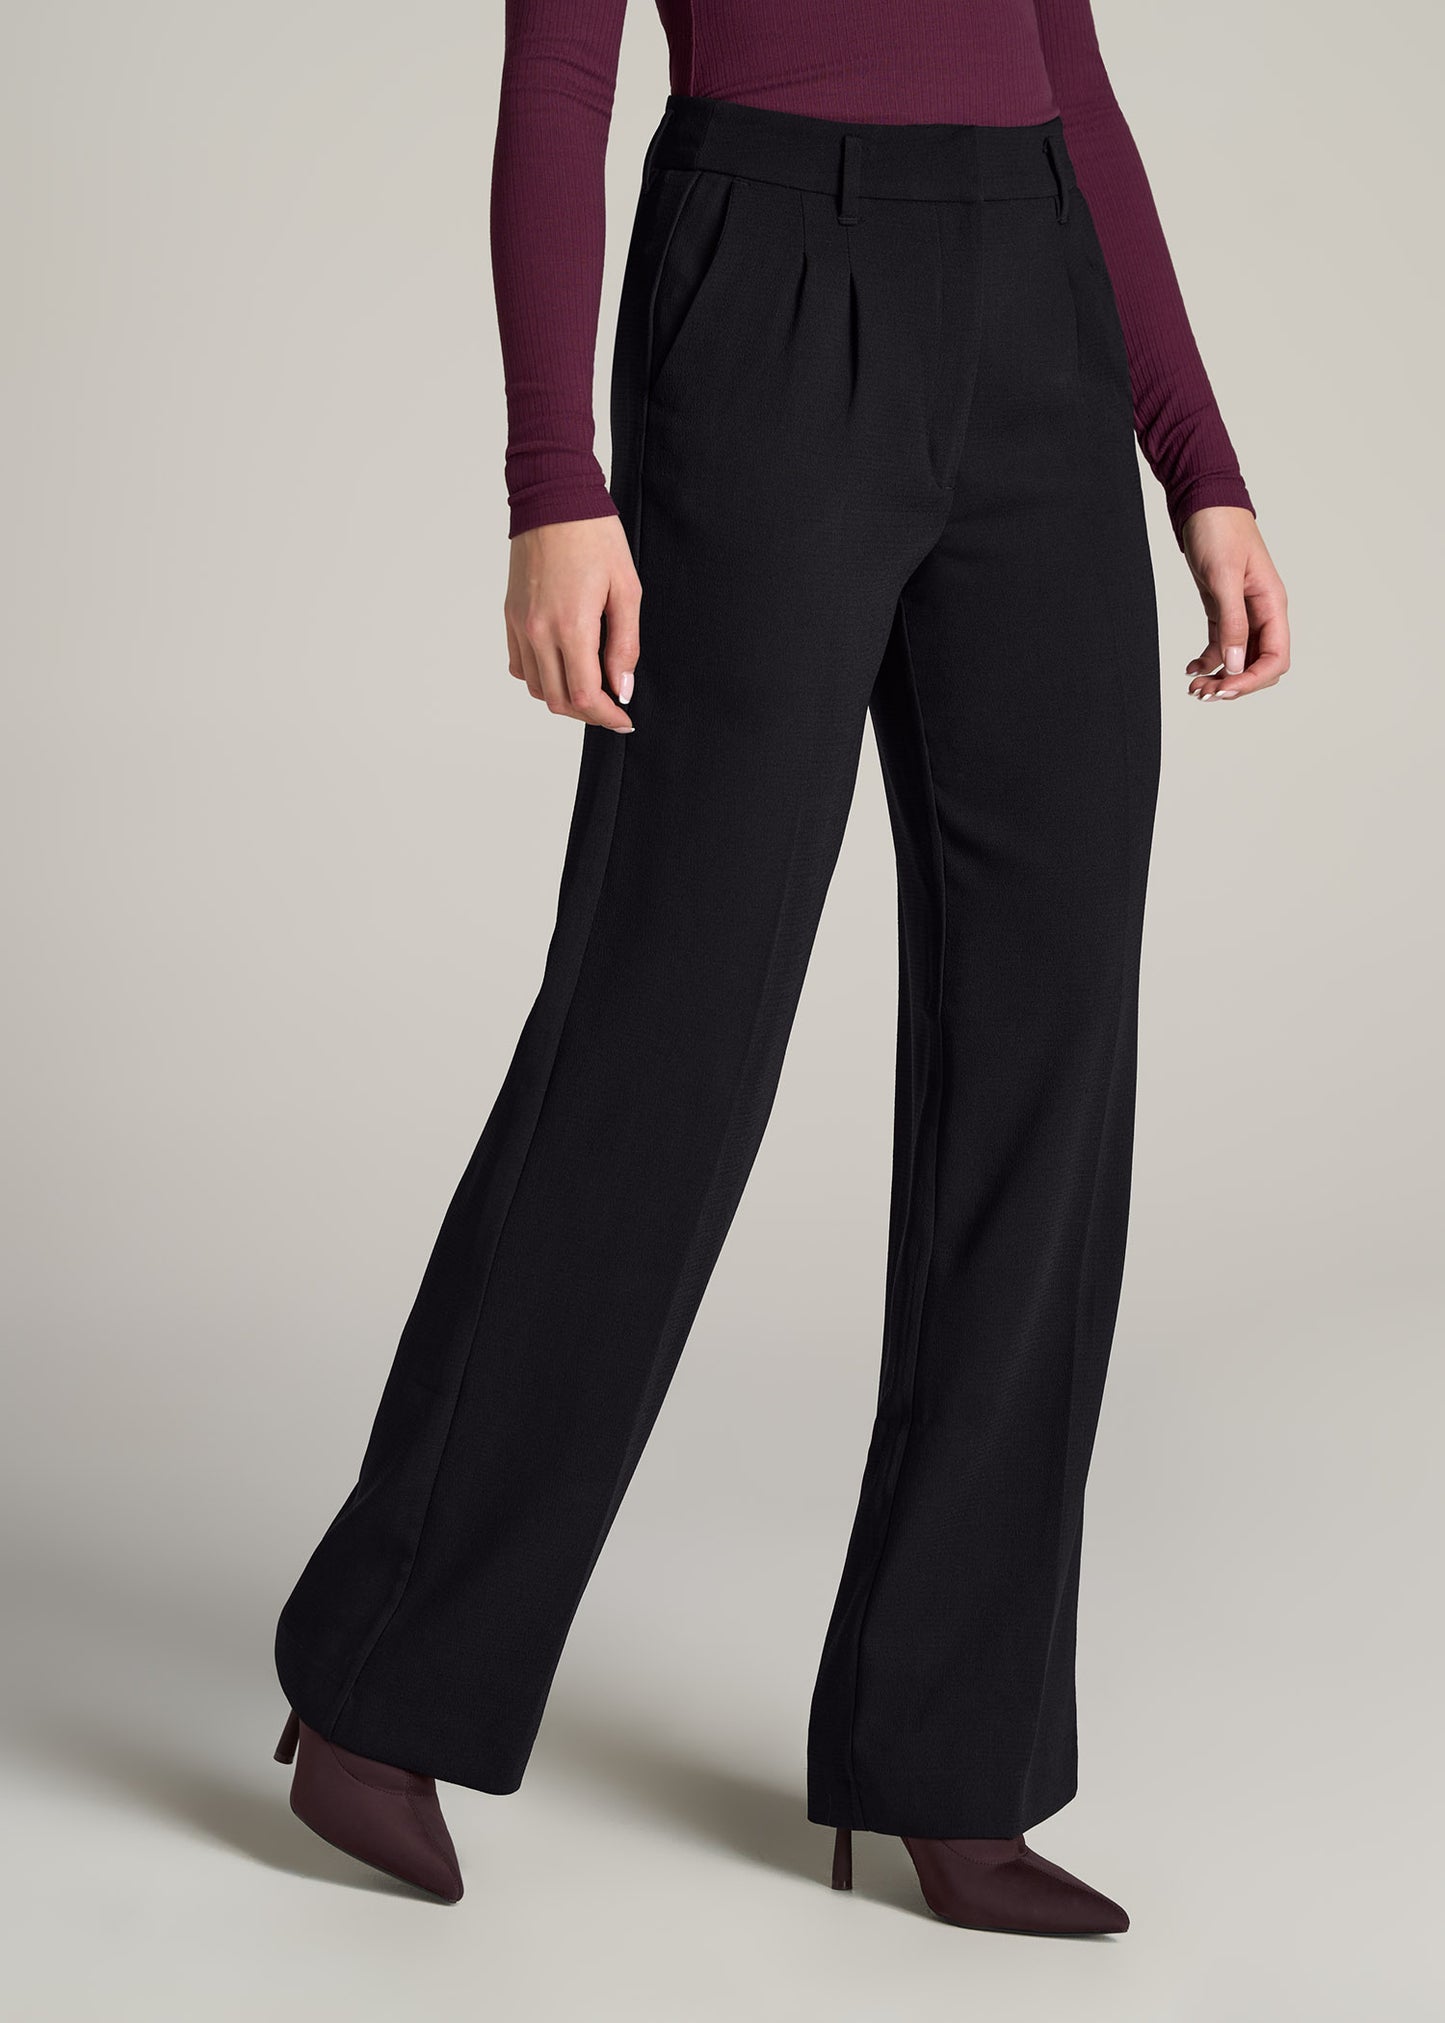 Women's Tall Wide Leg Pleated Dress Pants Black, American Tall